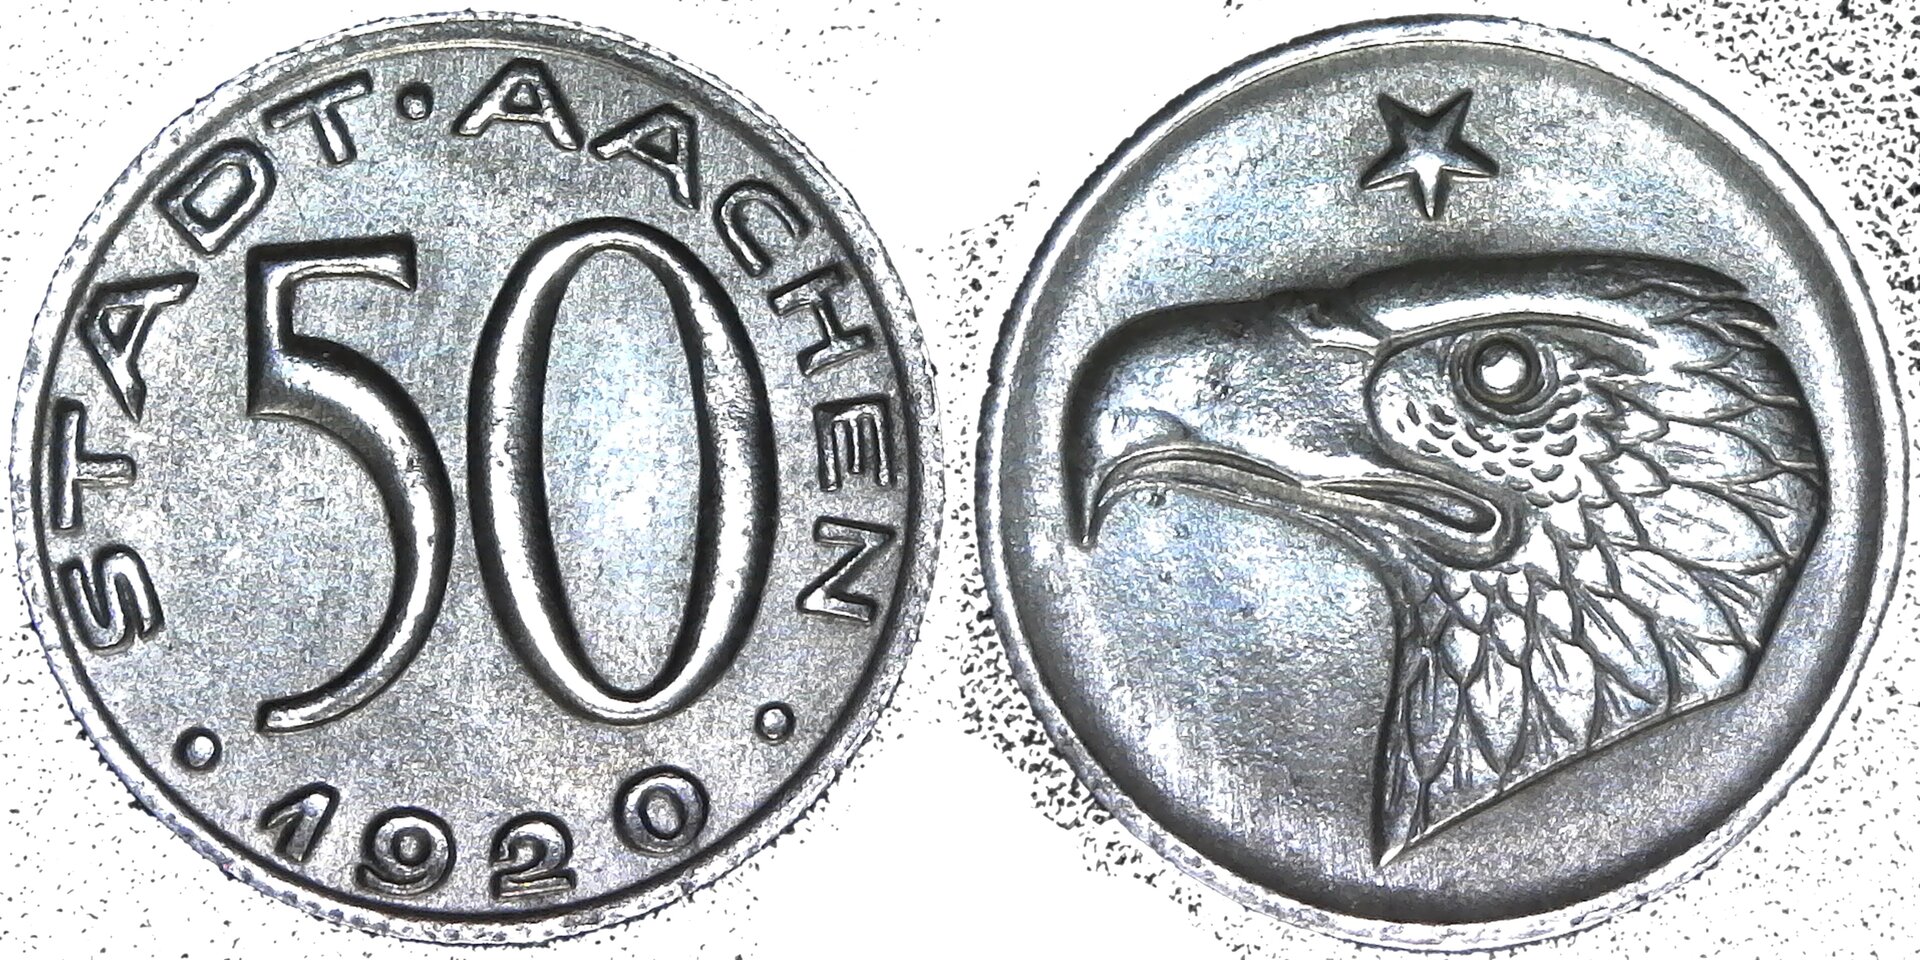 Germany - Aachen iron 50 Pfennig 1920 - M99.41 obv-side-cutout.jpg